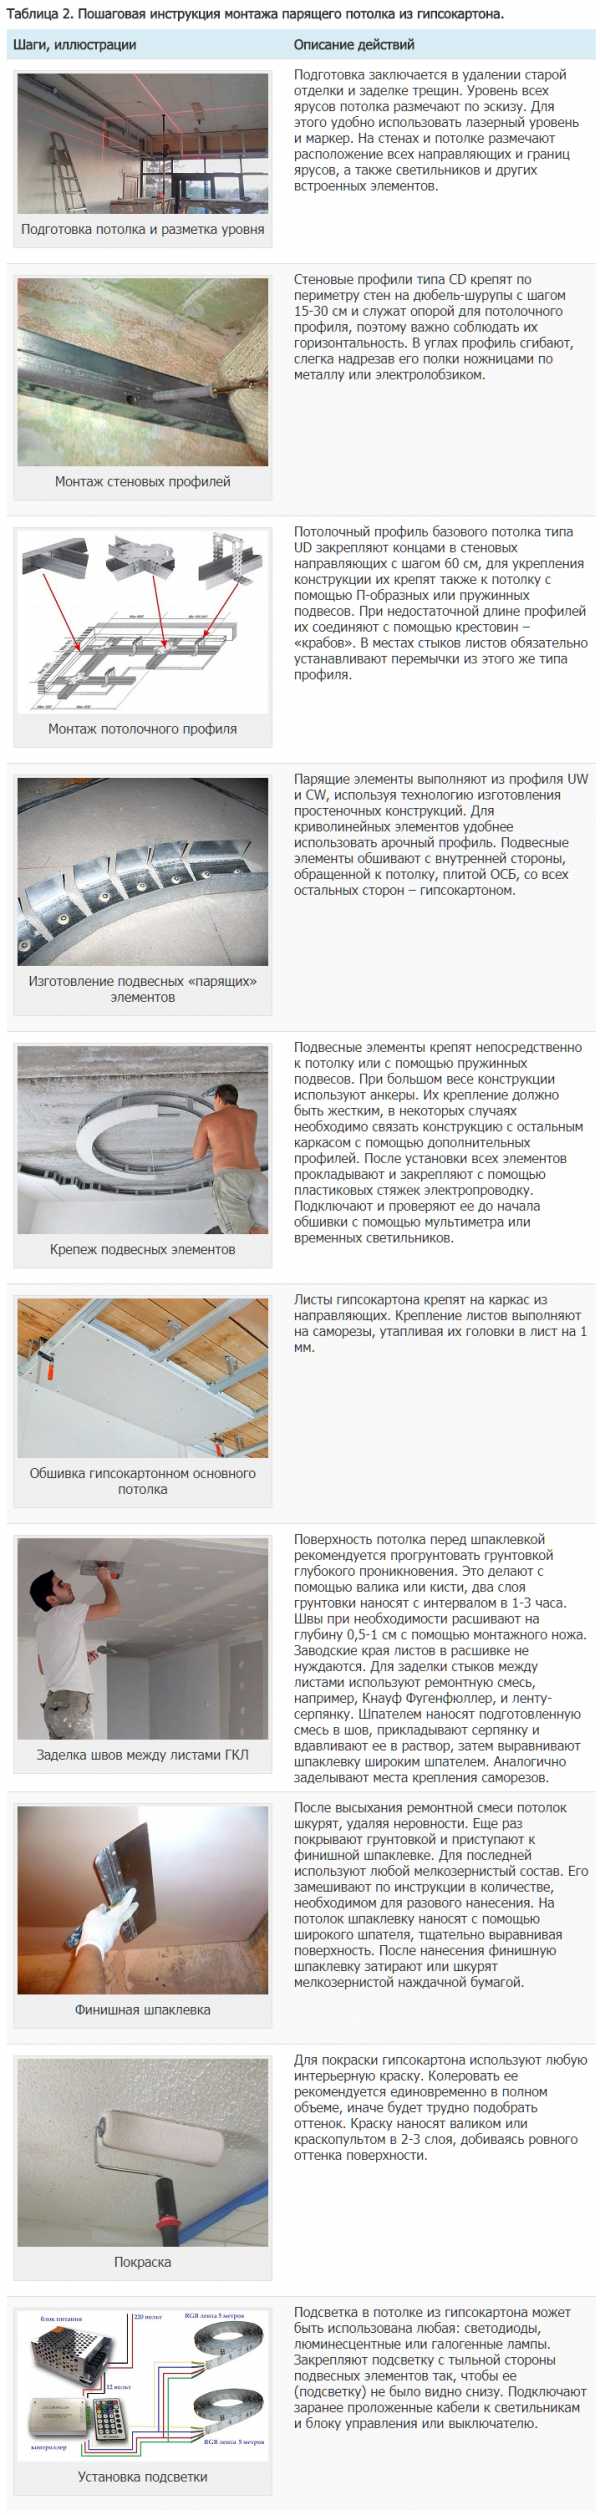 Монтаж парящий потолок – Парящие натяжные потолки - что это, фото для зала, конструкция и технология как сделать, монтаж, цена и где купить в Москве и СПб